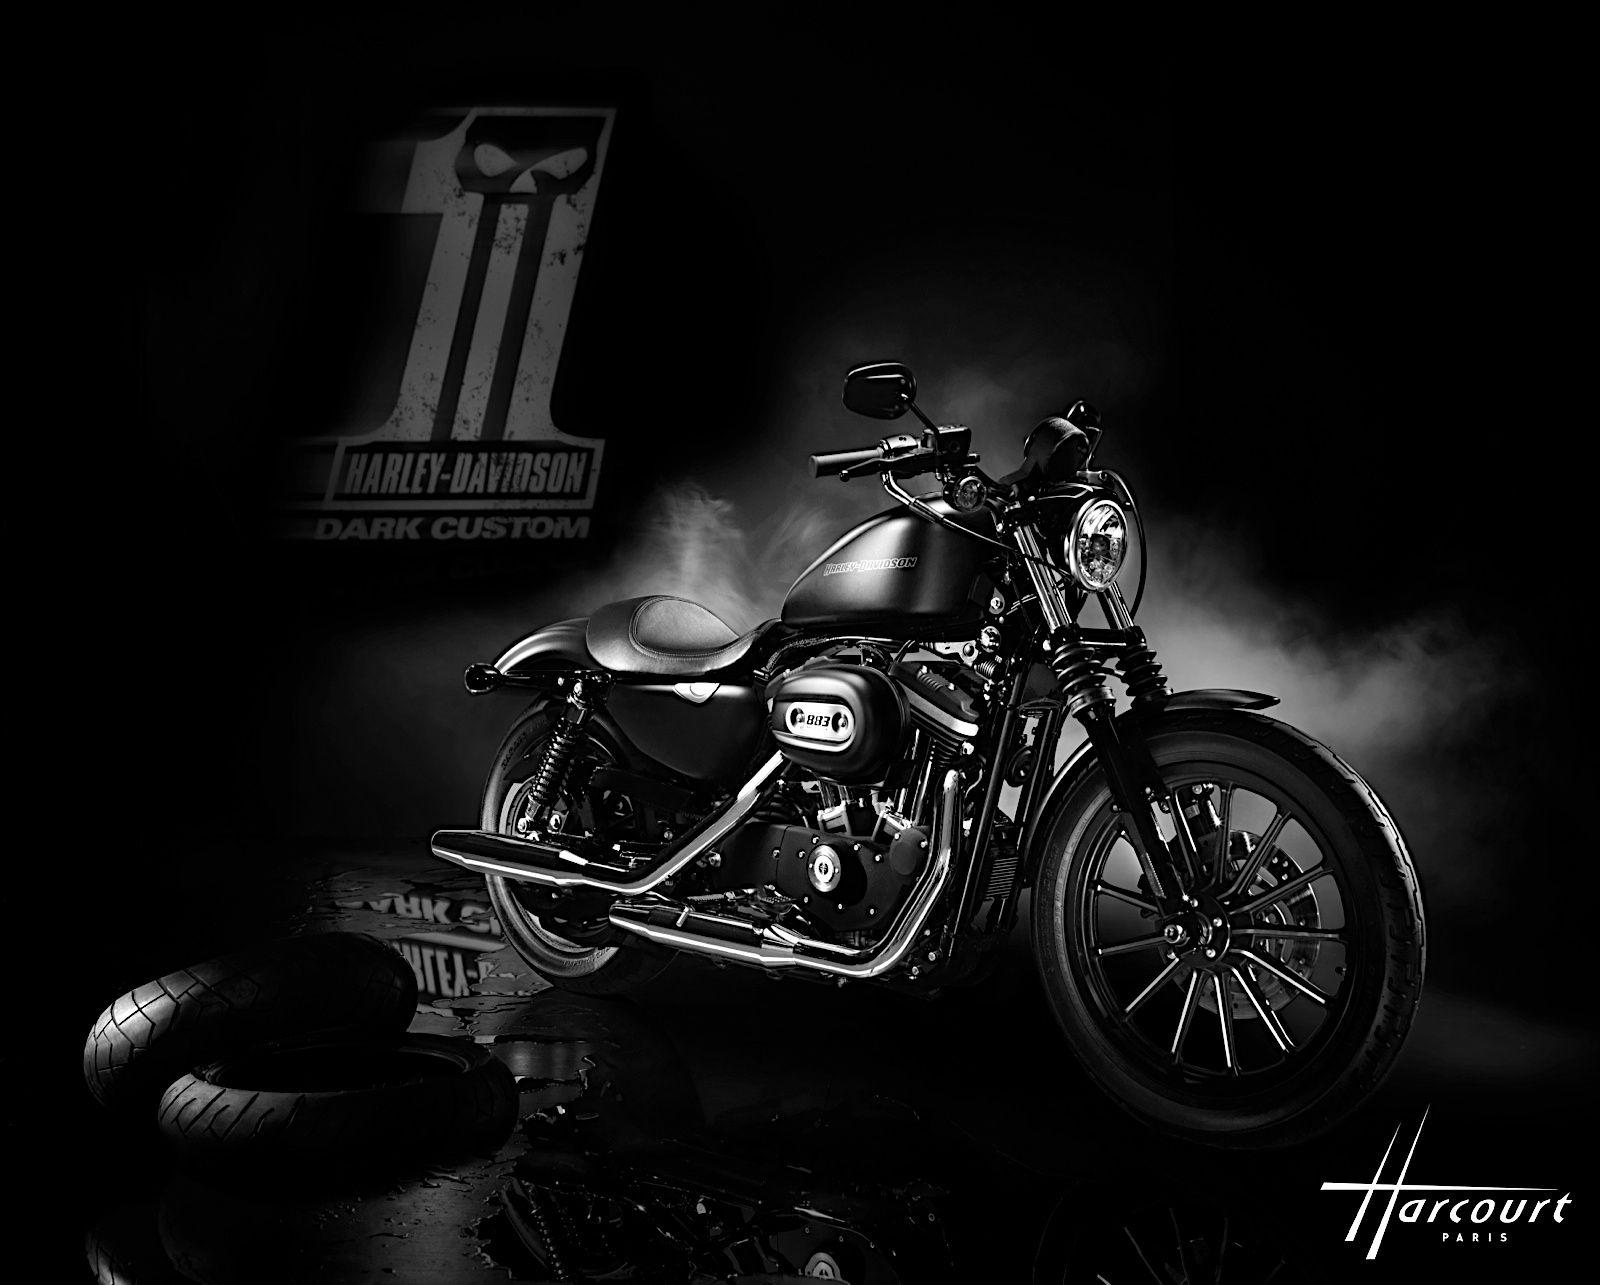 Harley Sportster Nightster. Free HD Wallpaper